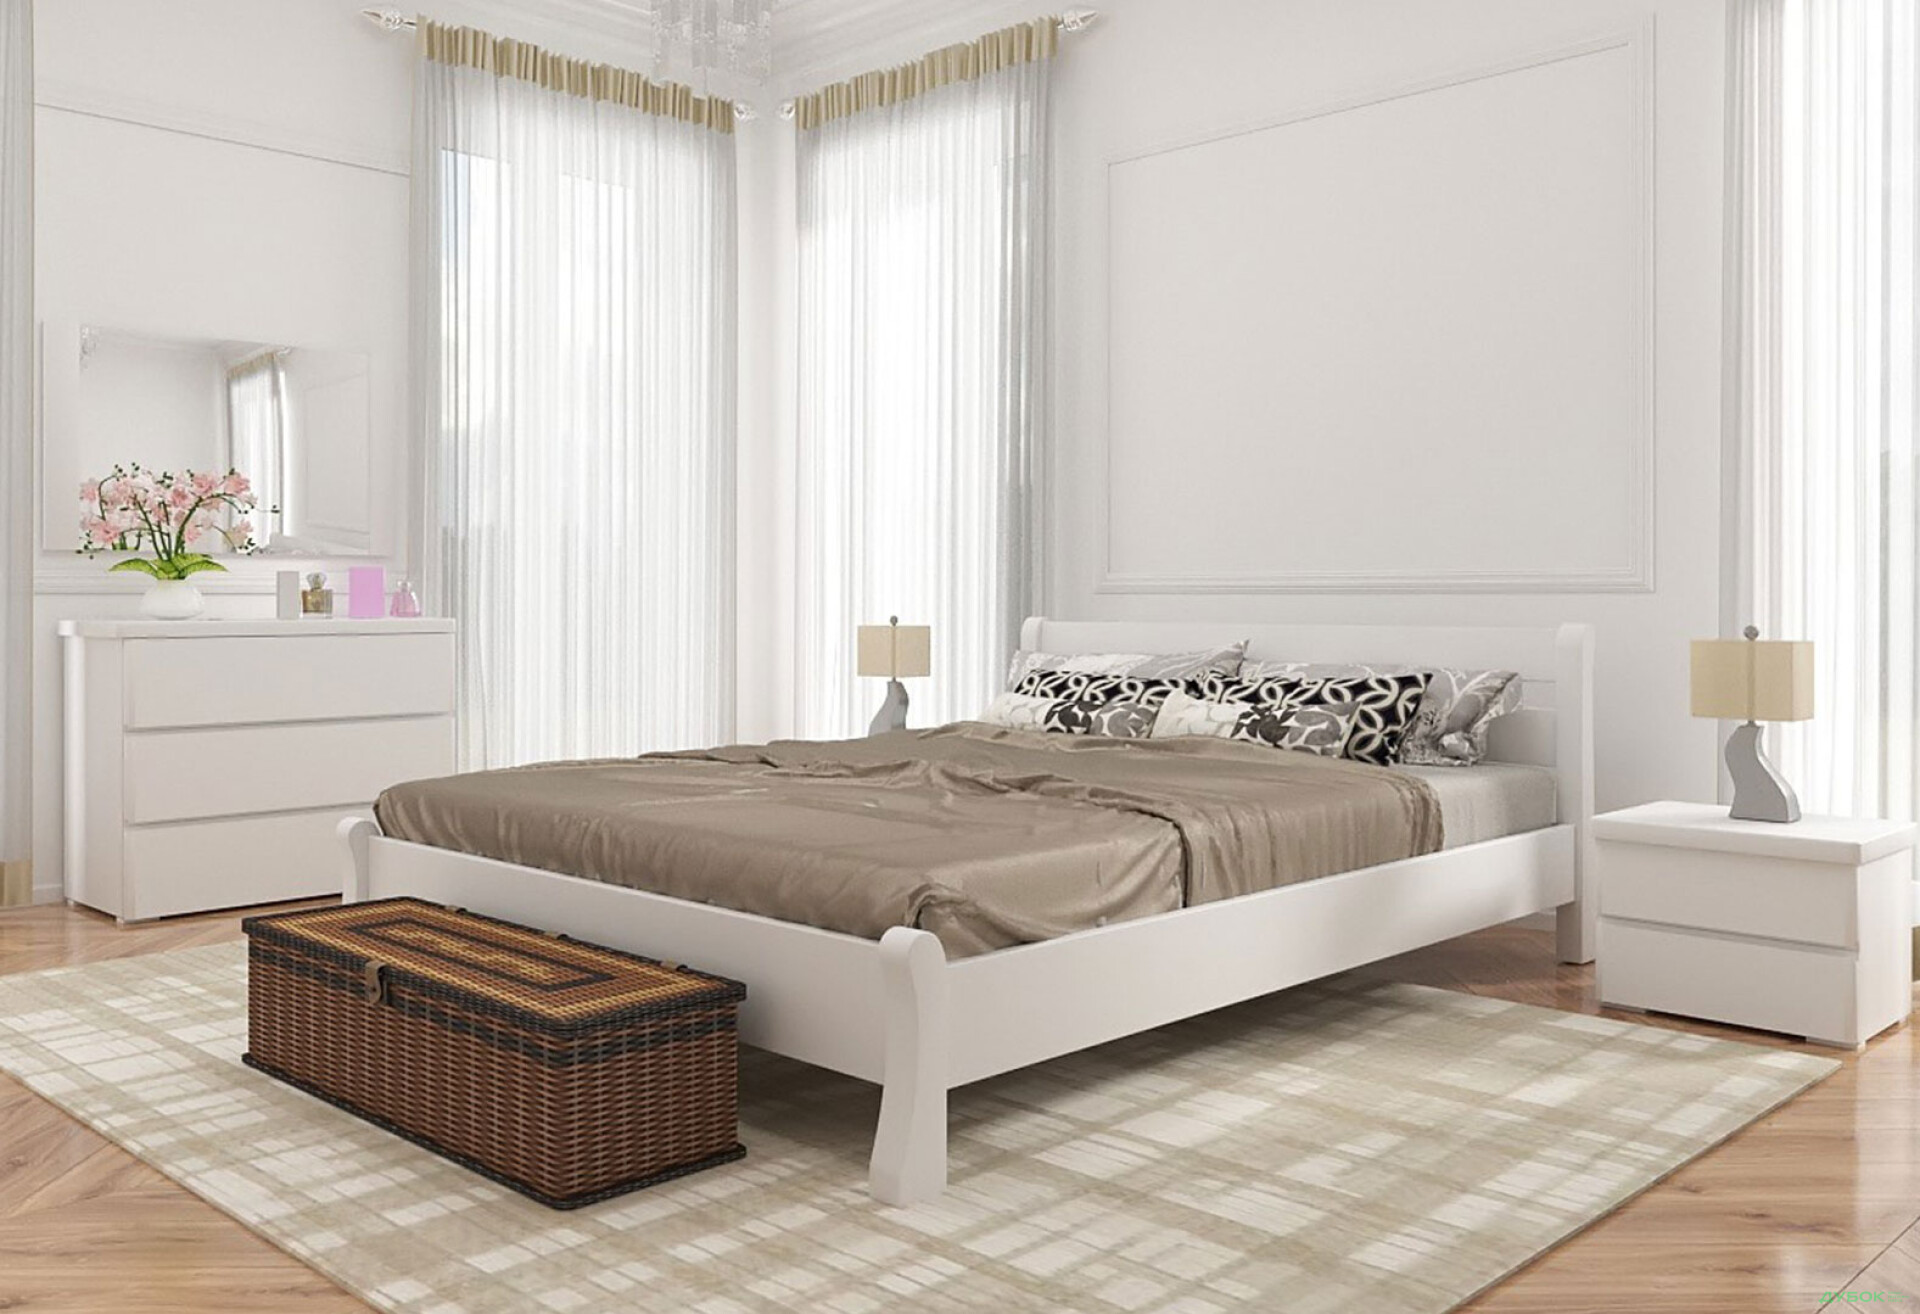 Фото 4 - Кровать Арбор Древ Венеция 180х200, сосна, белый